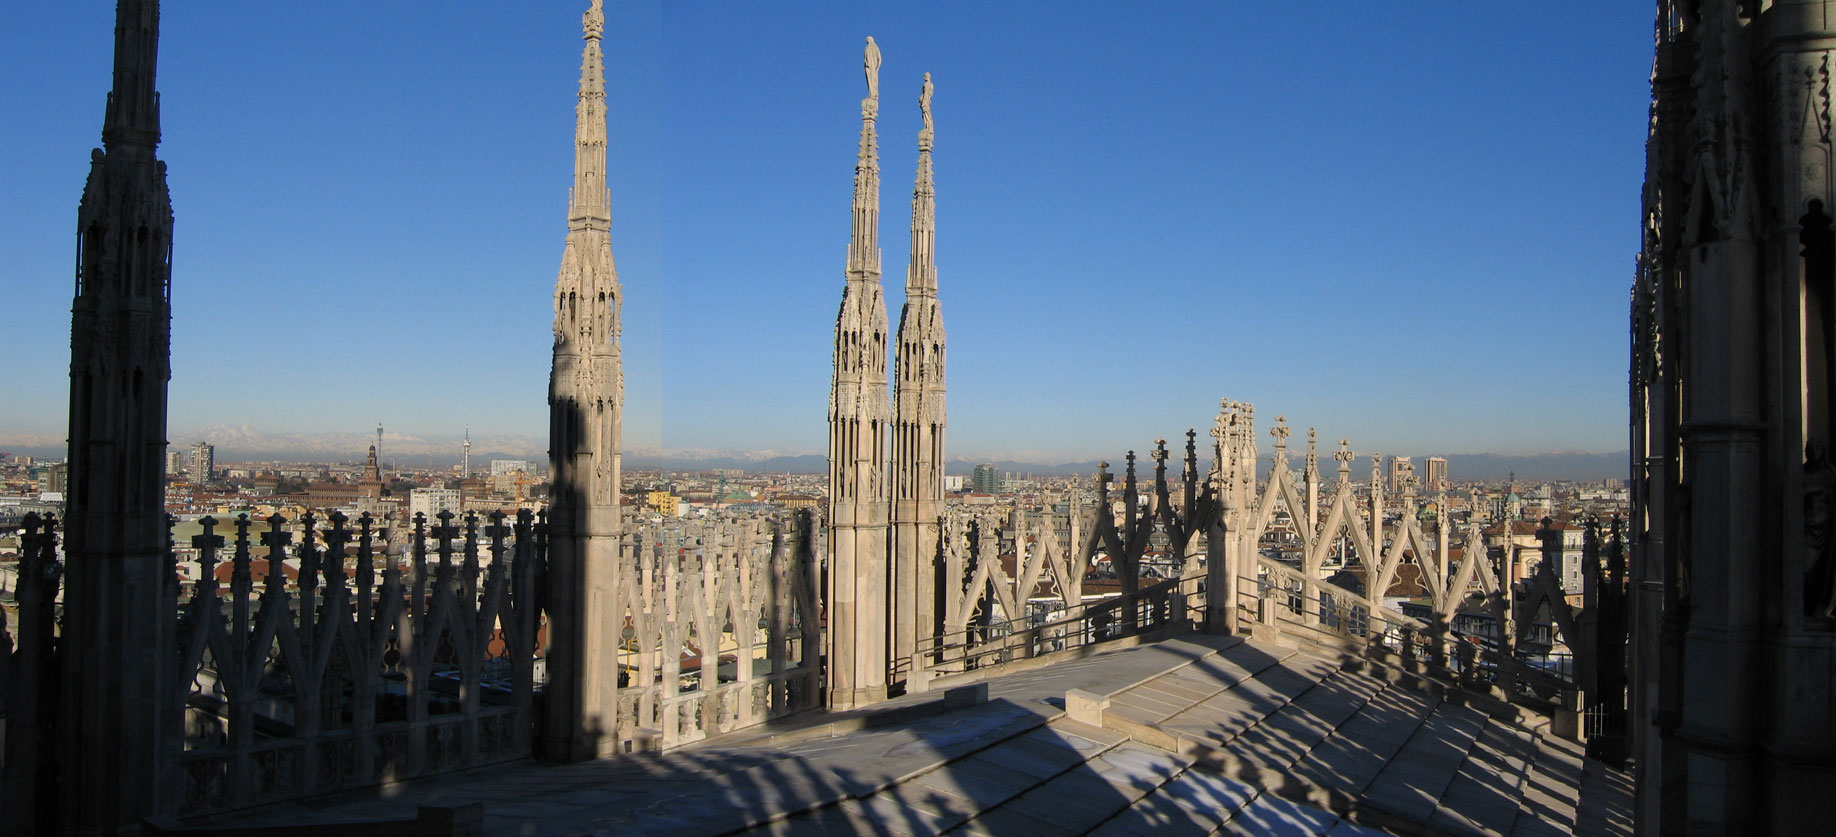 Duomo
Milan